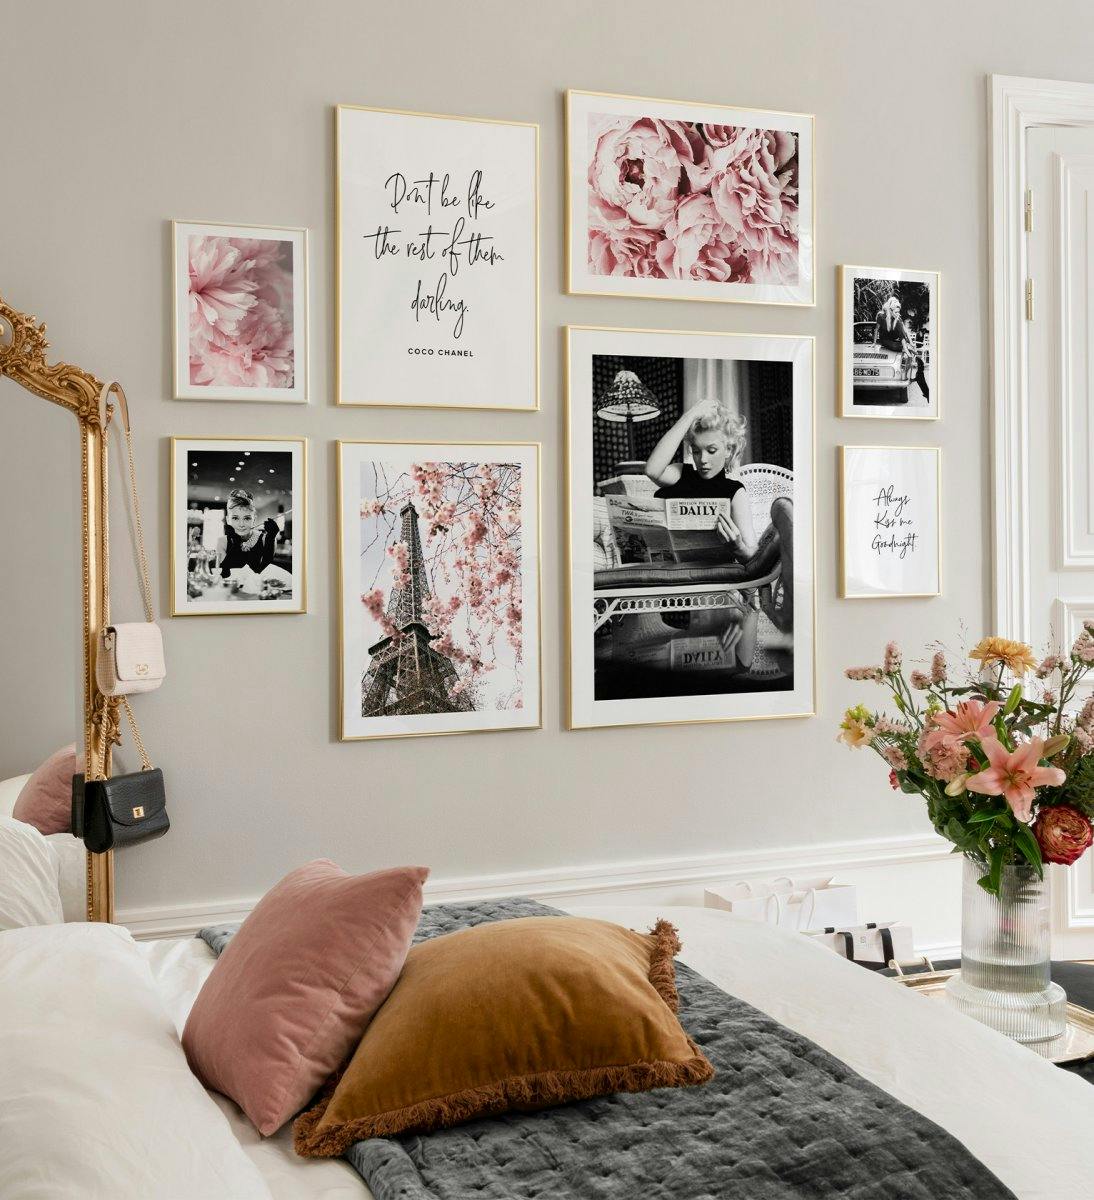 핑크 플라워 포스터, 인용문 인쇄물 및 셀러브리티 포스터가 있는 거실용 골든 프레임의 세련된 갤러리 벽